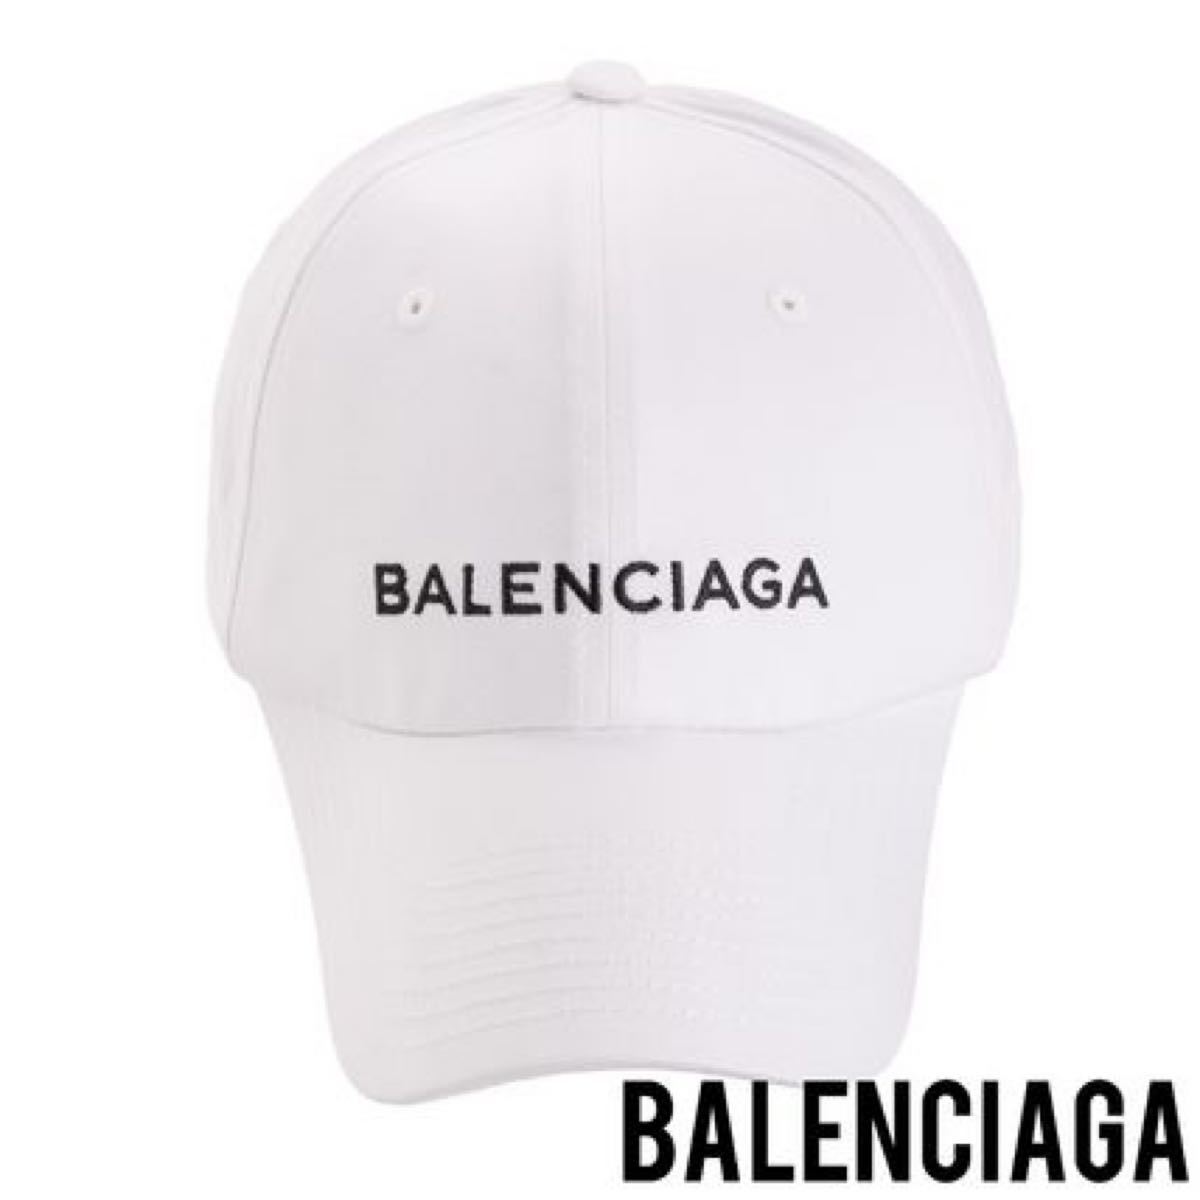 バレンシアガロゴキャップ メンズファッション 帽子 www